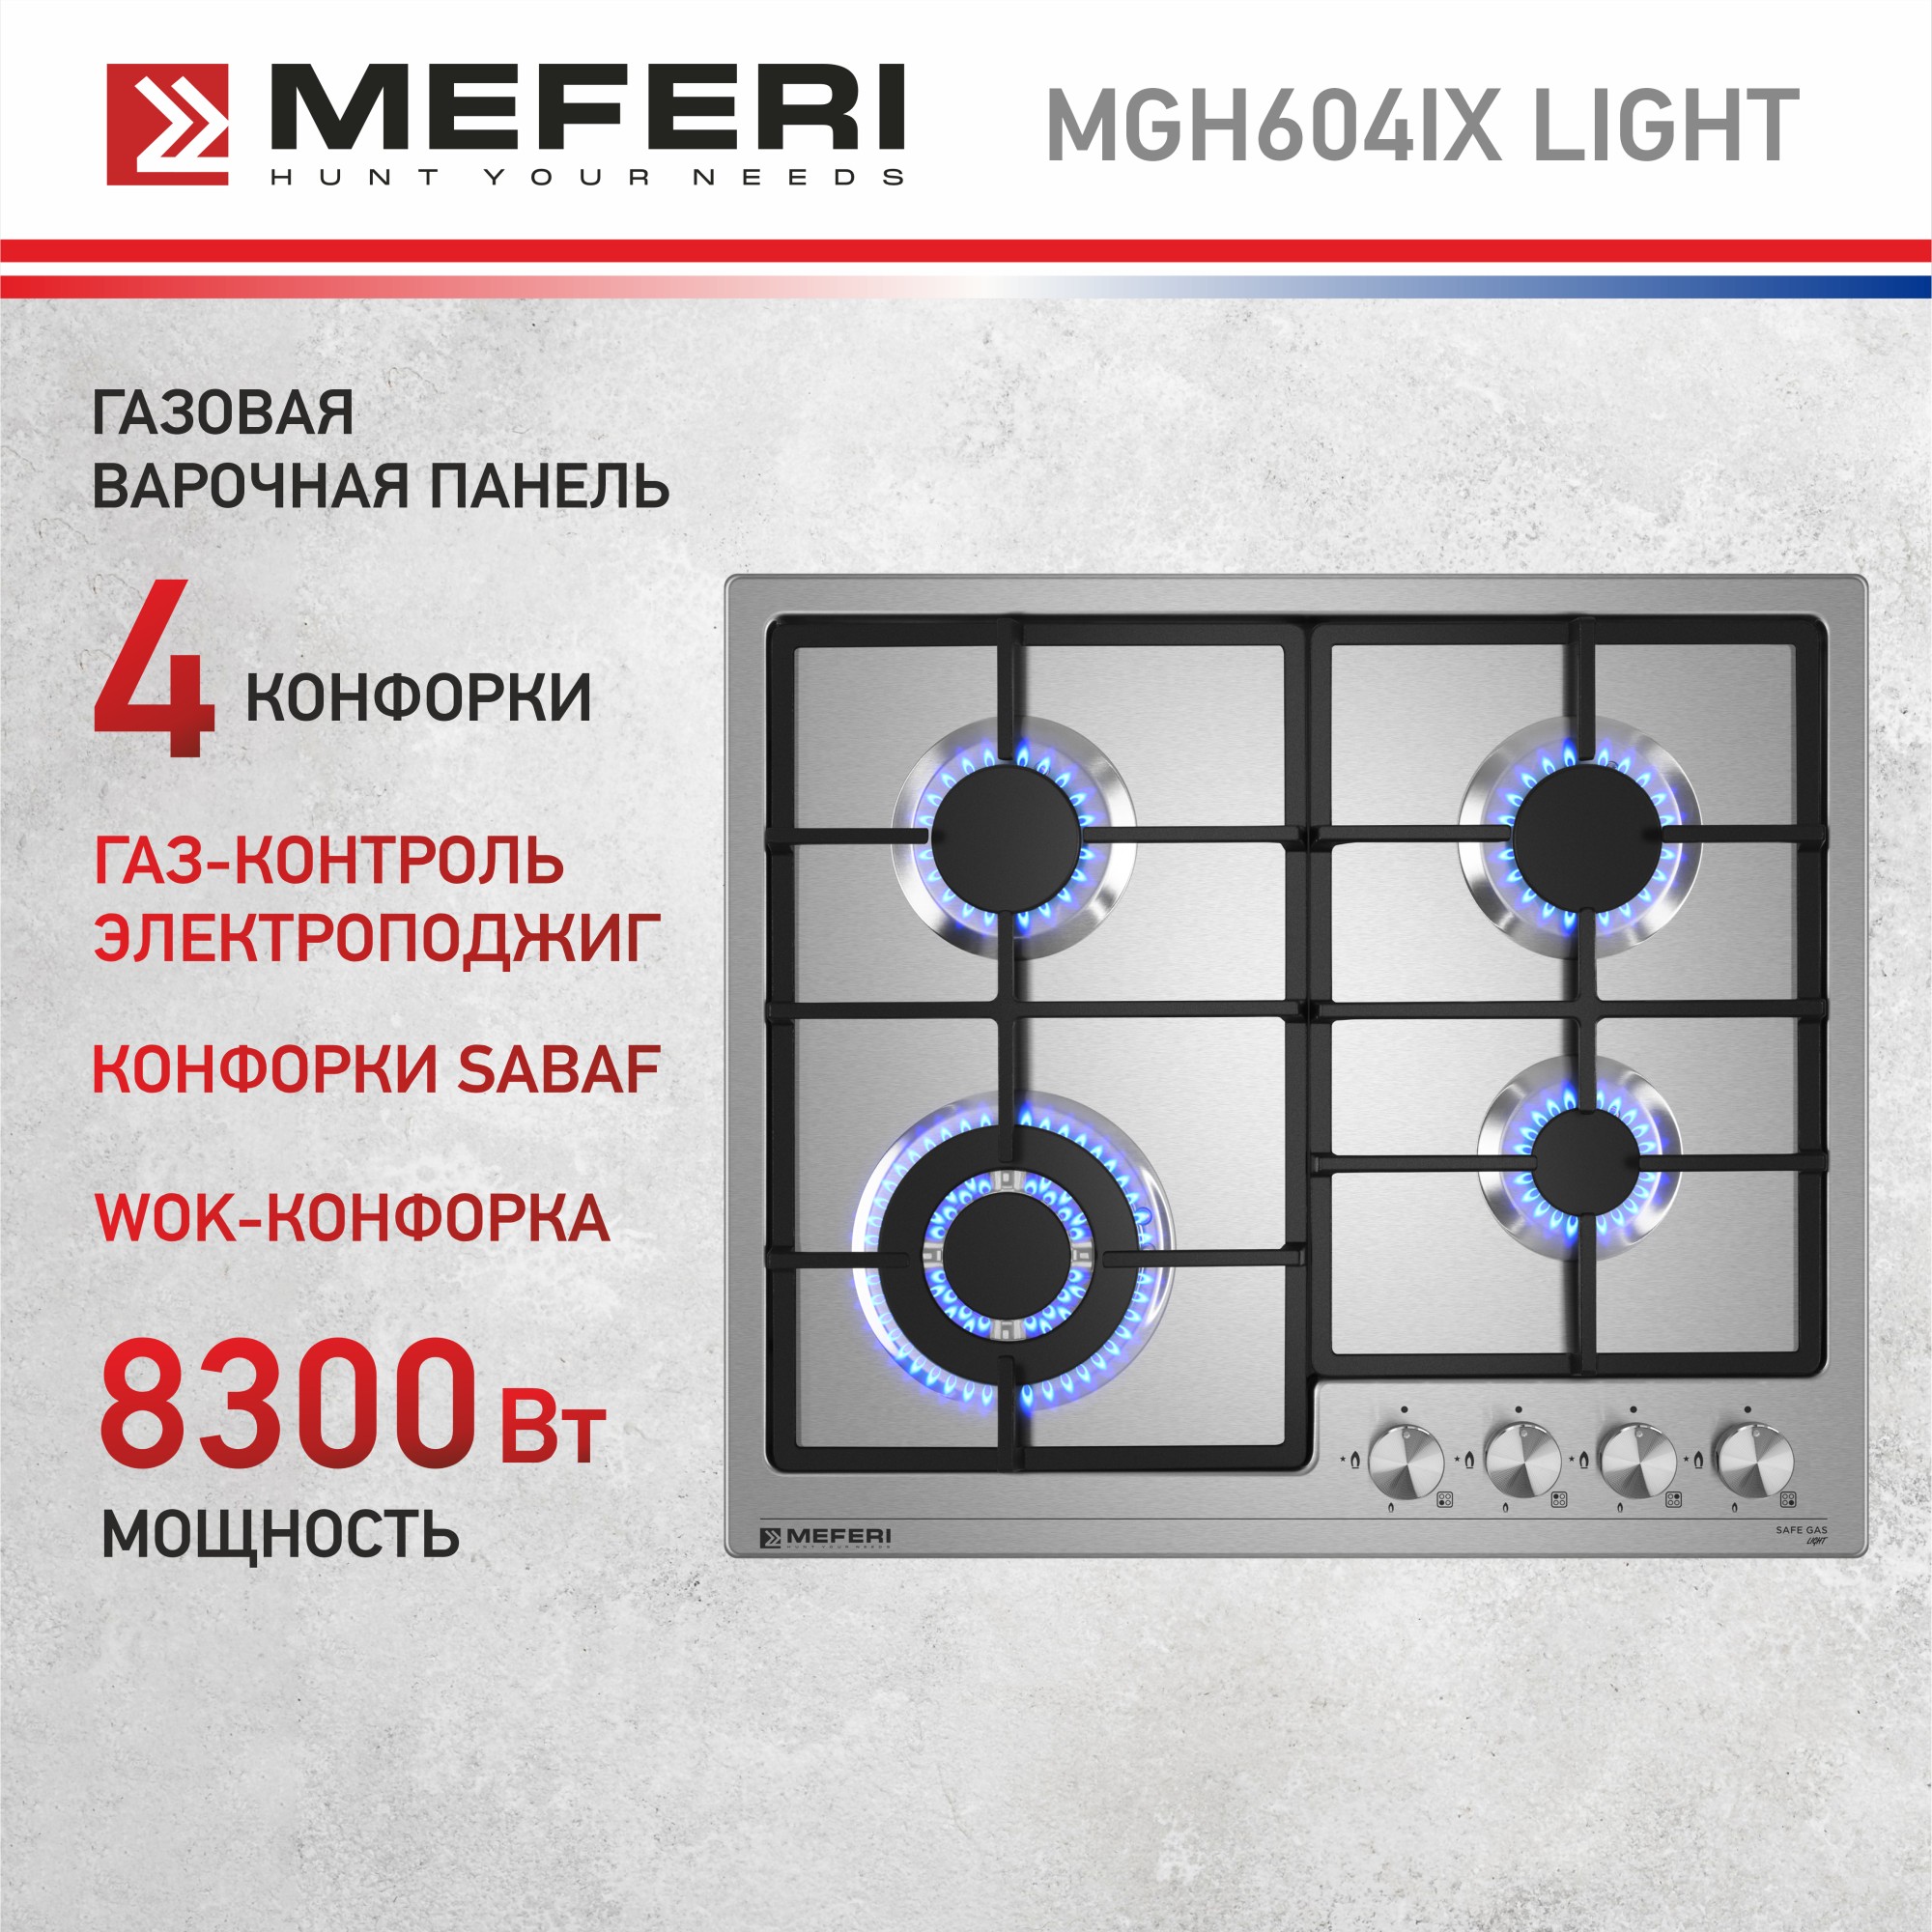 Встраиваемая варочная панель газовая Meferi MGH604IX LIGHT серебристый встраиваемая варочная панель газовая grundig gigf 7235220 x серебристый